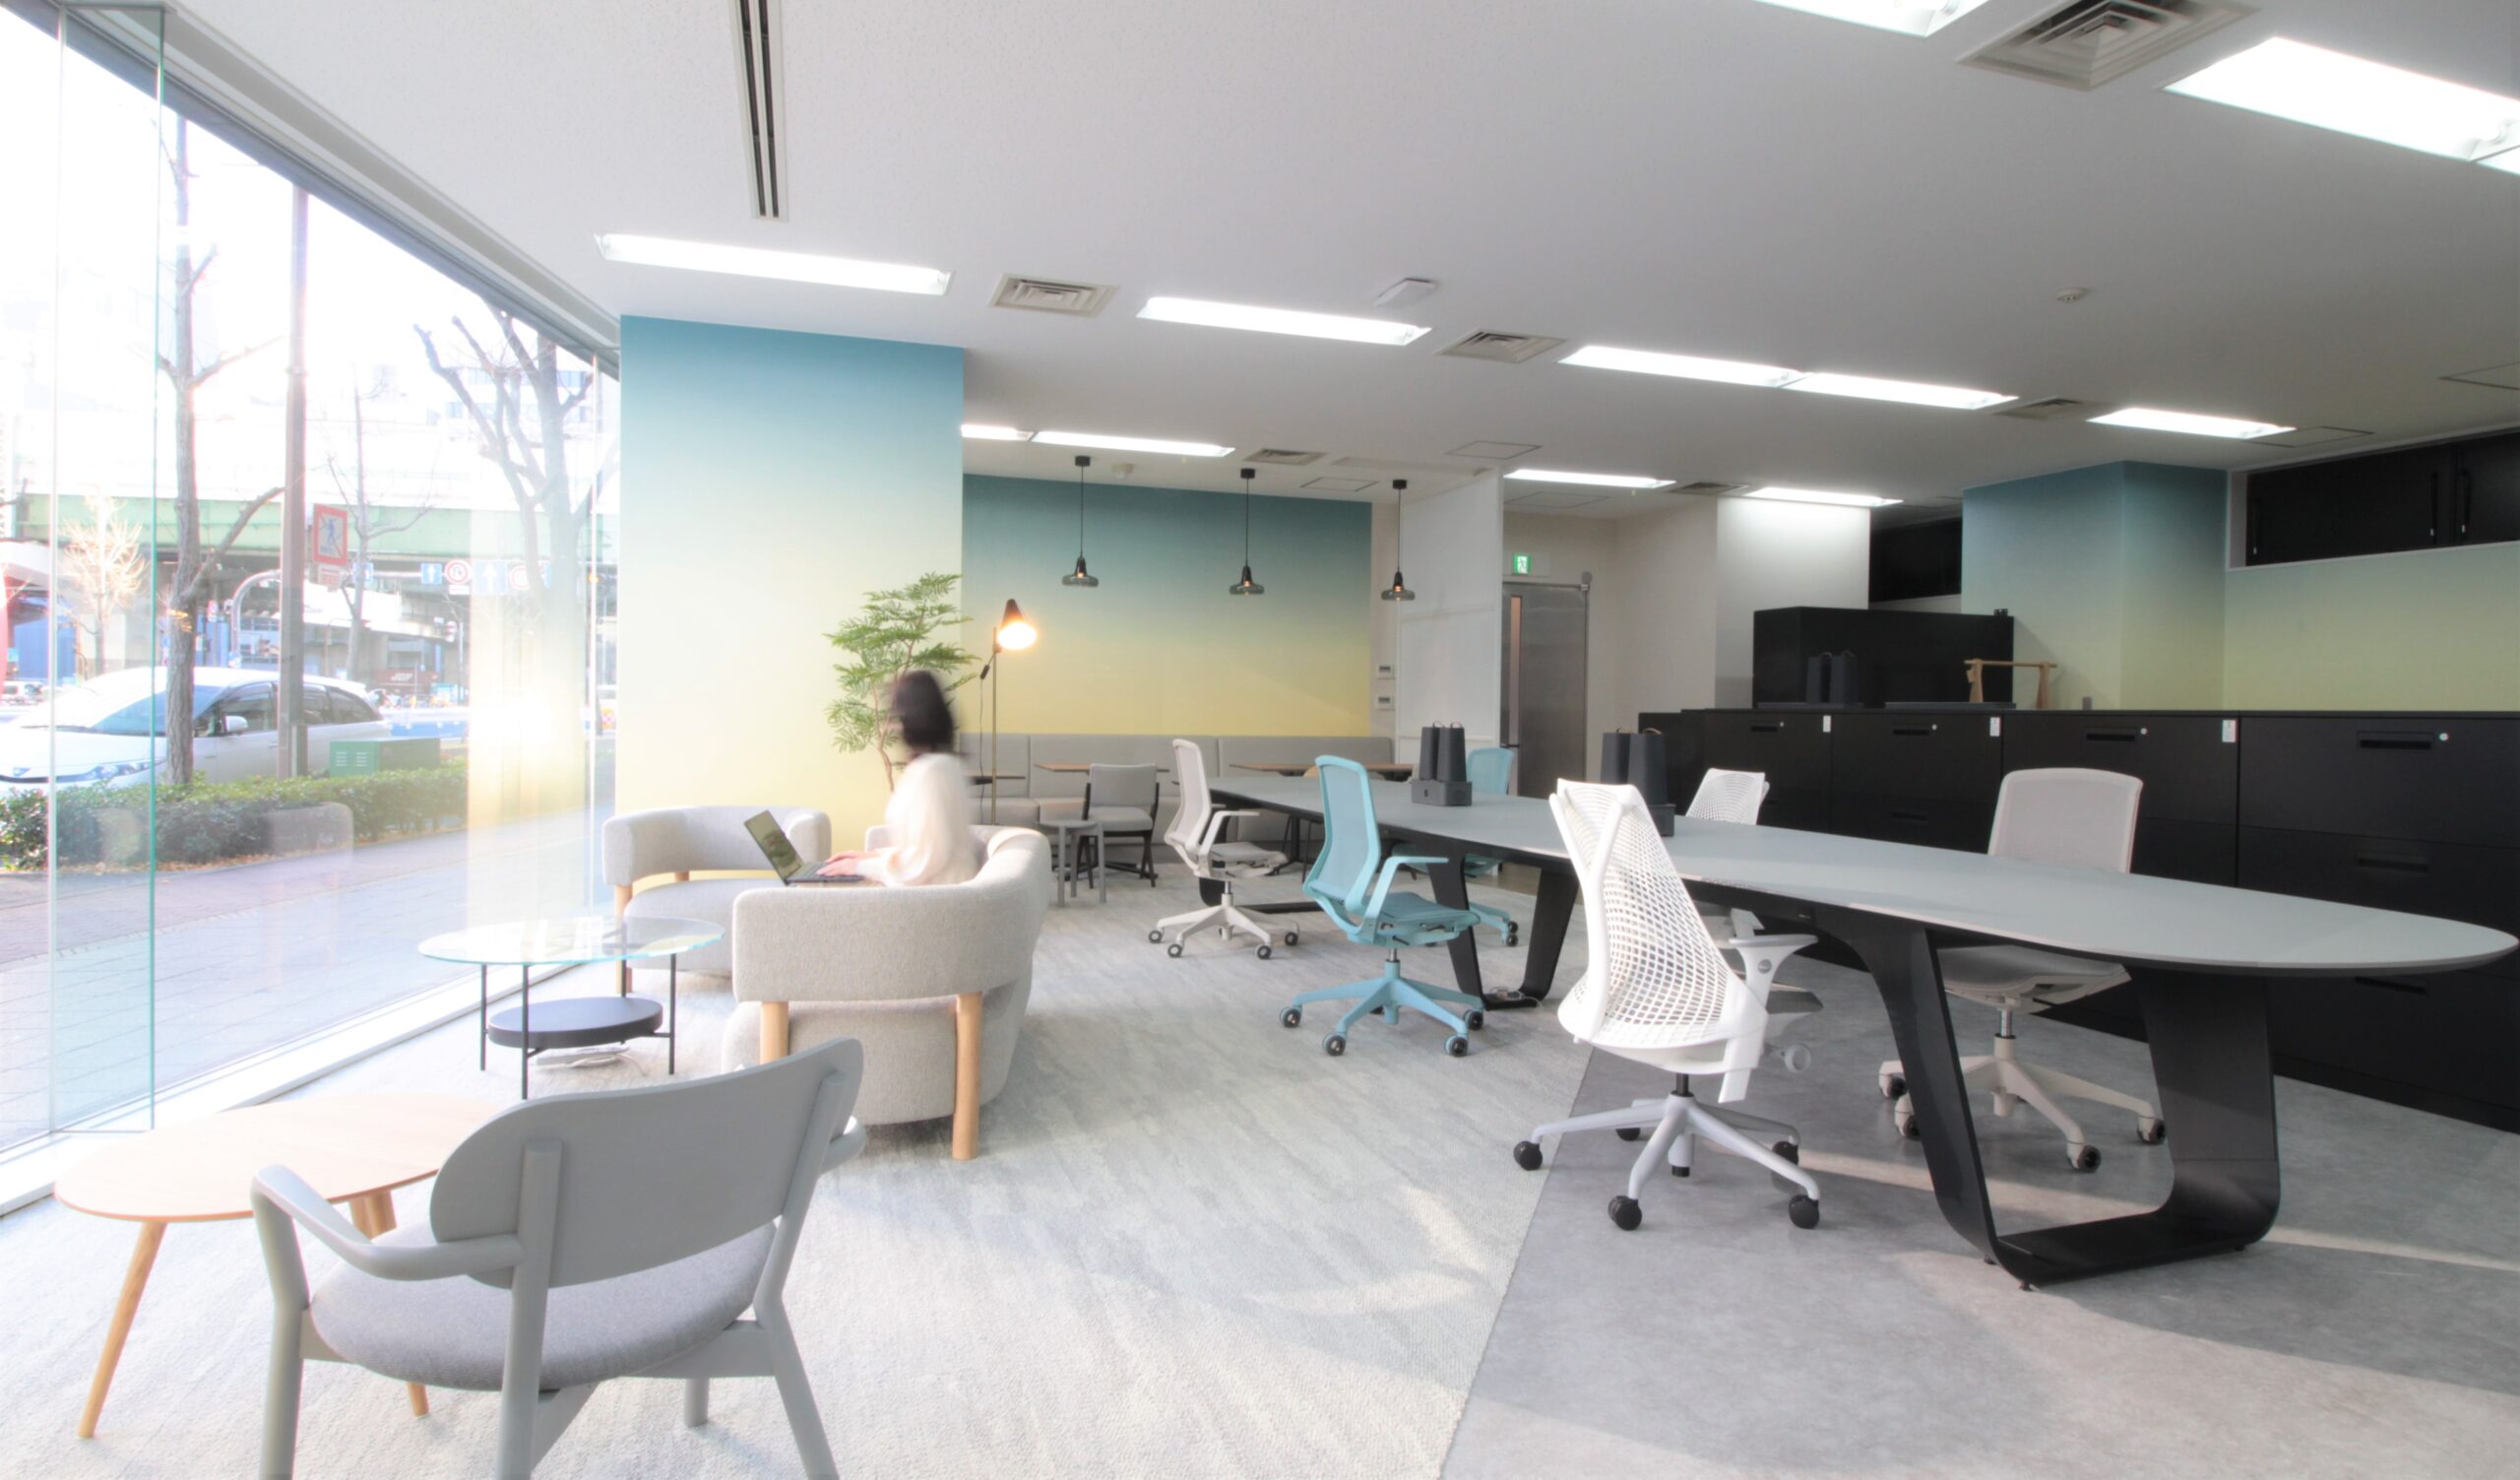 リリカラ大阪支店を移転・リニューアル｜インテリアとスペースソリューションによる連携を強化、グループシナジーを創出する新オフィス「Time generation office」